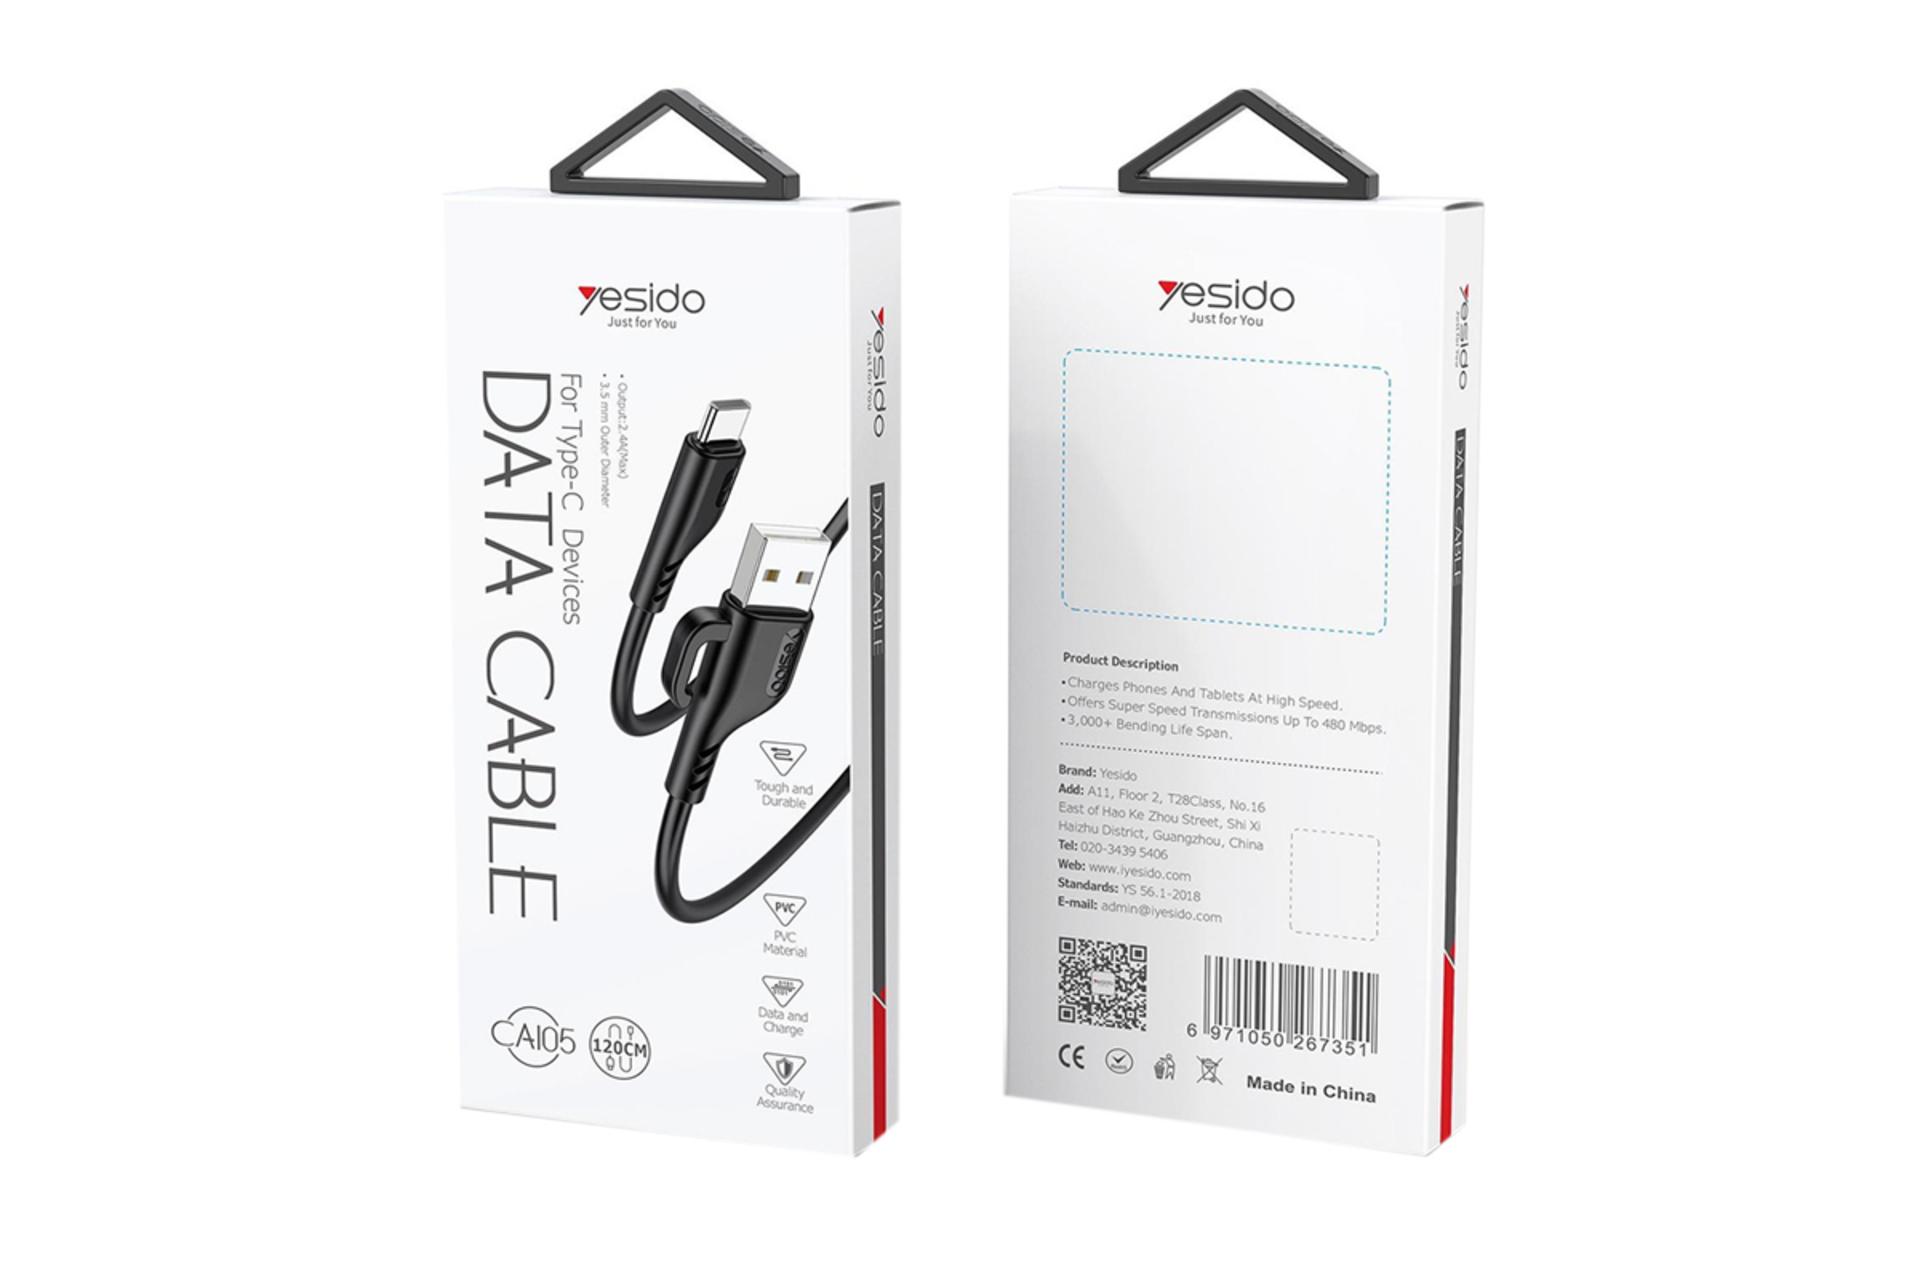 جعبه کابل شارژ USB یسیدو Type-A به Type-C مدل CA105 با طول 1.2 متر